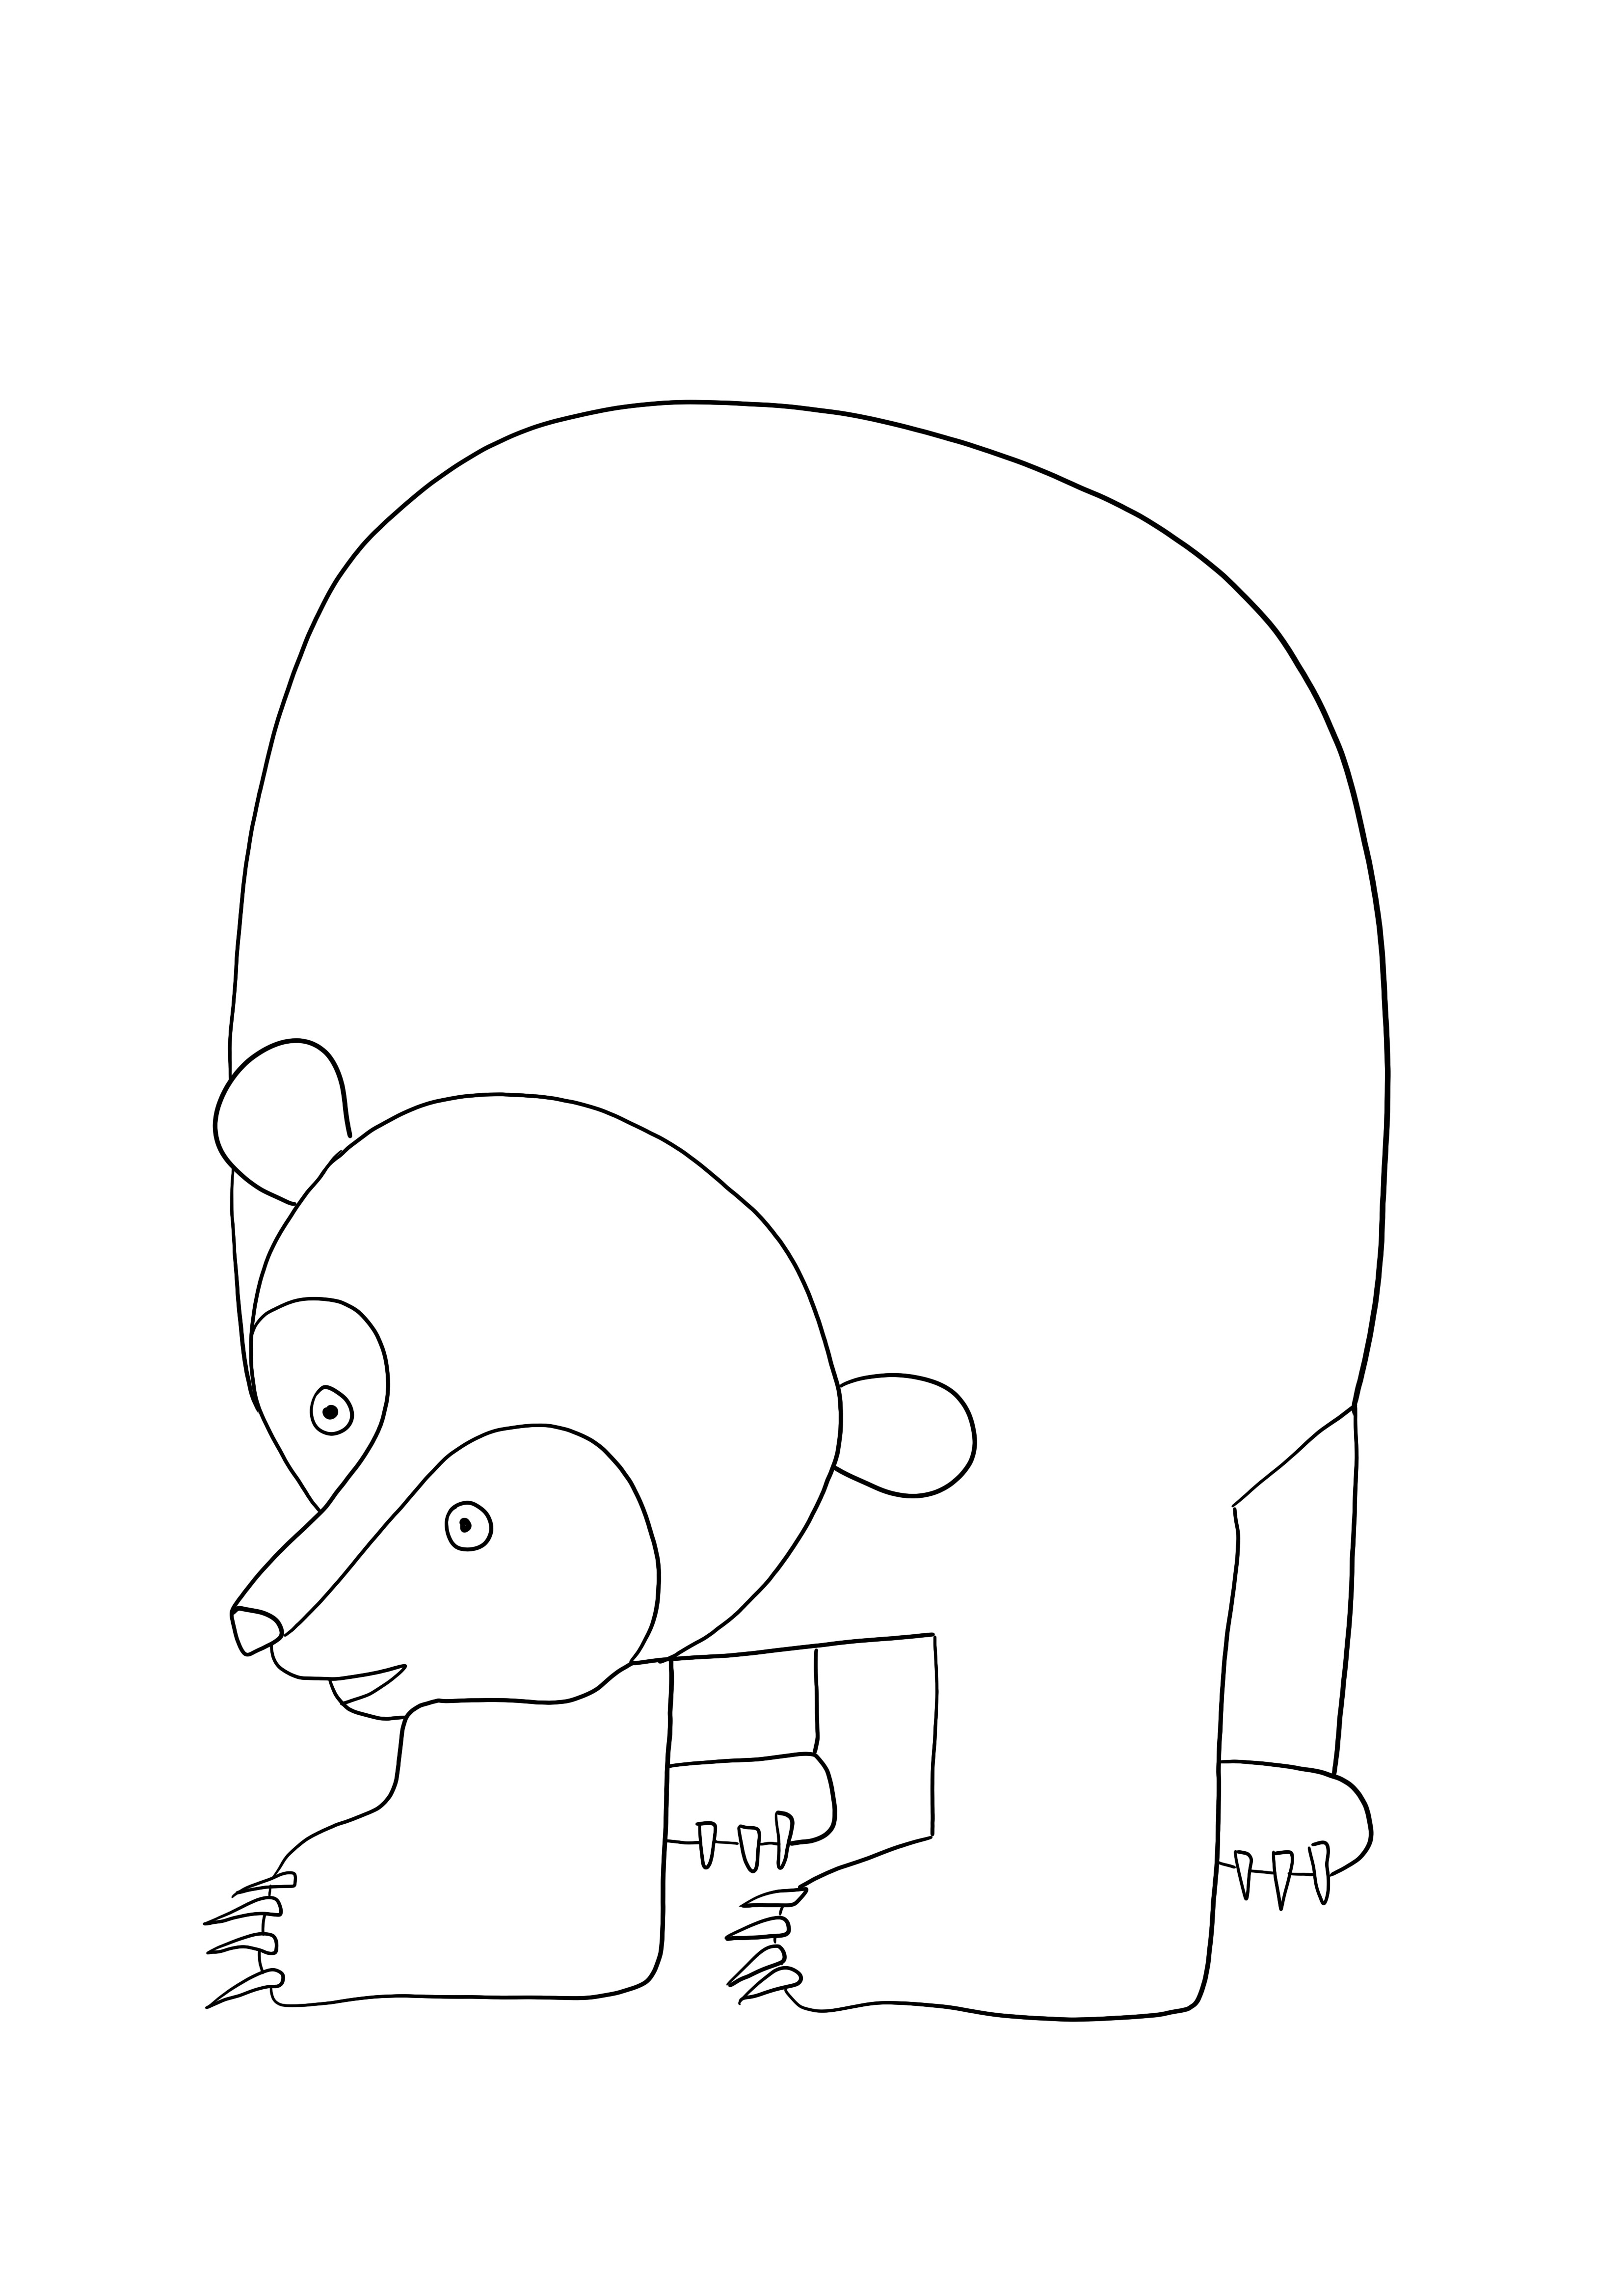 Ursul brun de tipărit gratuit și colorat pentru copii de toate vârstele